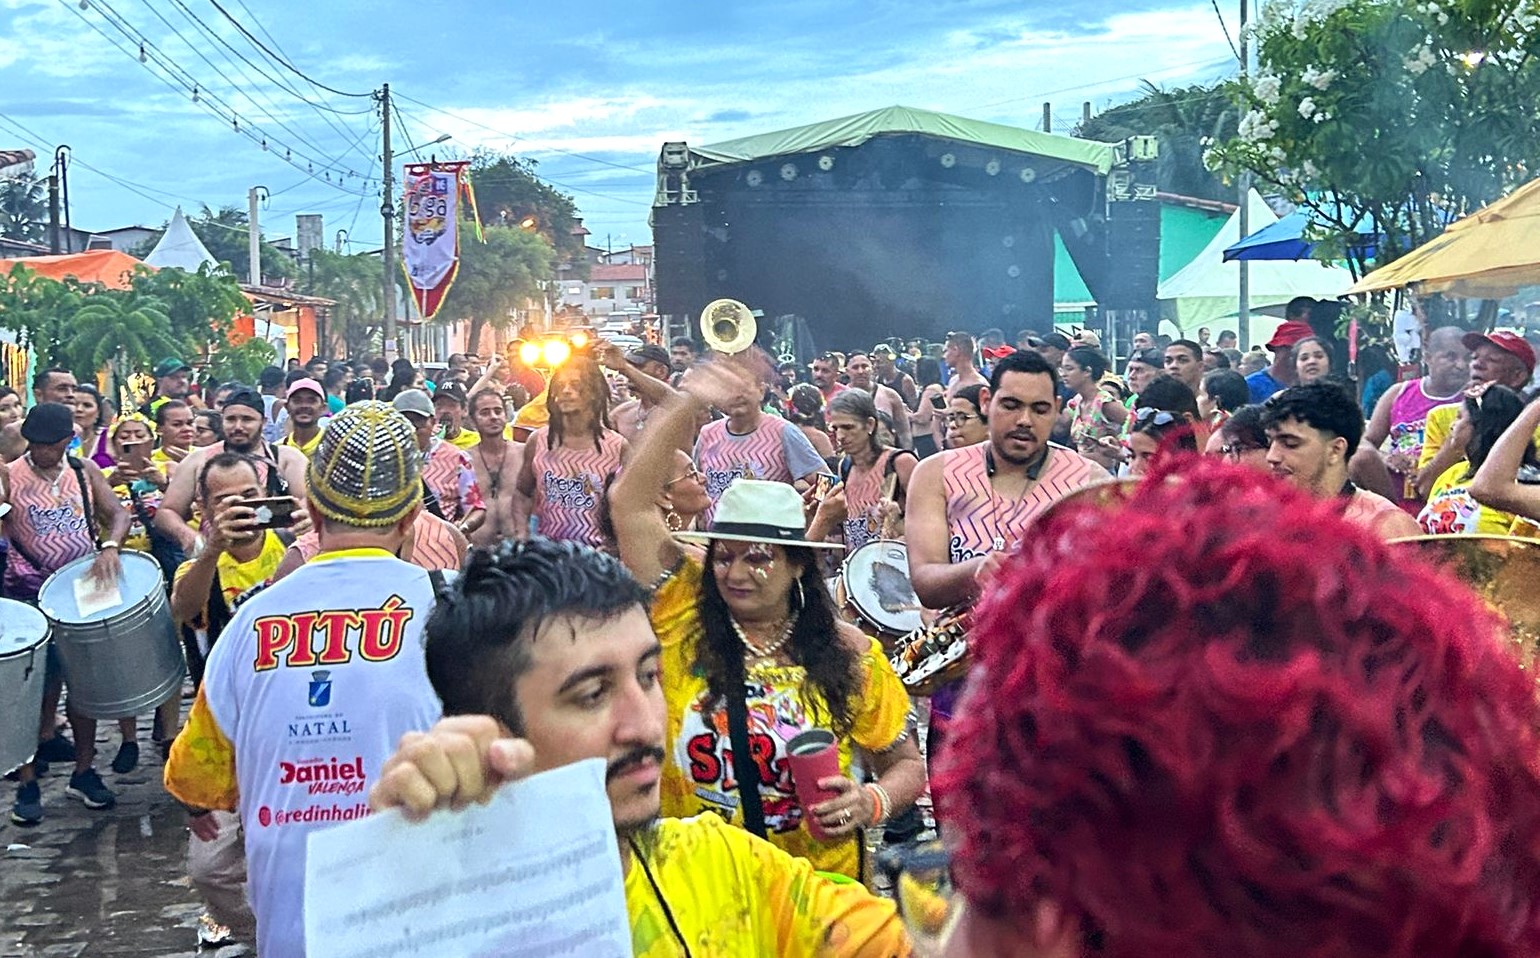 Banda do Siri mantém o ritmo da folia no carnaval da Redinha